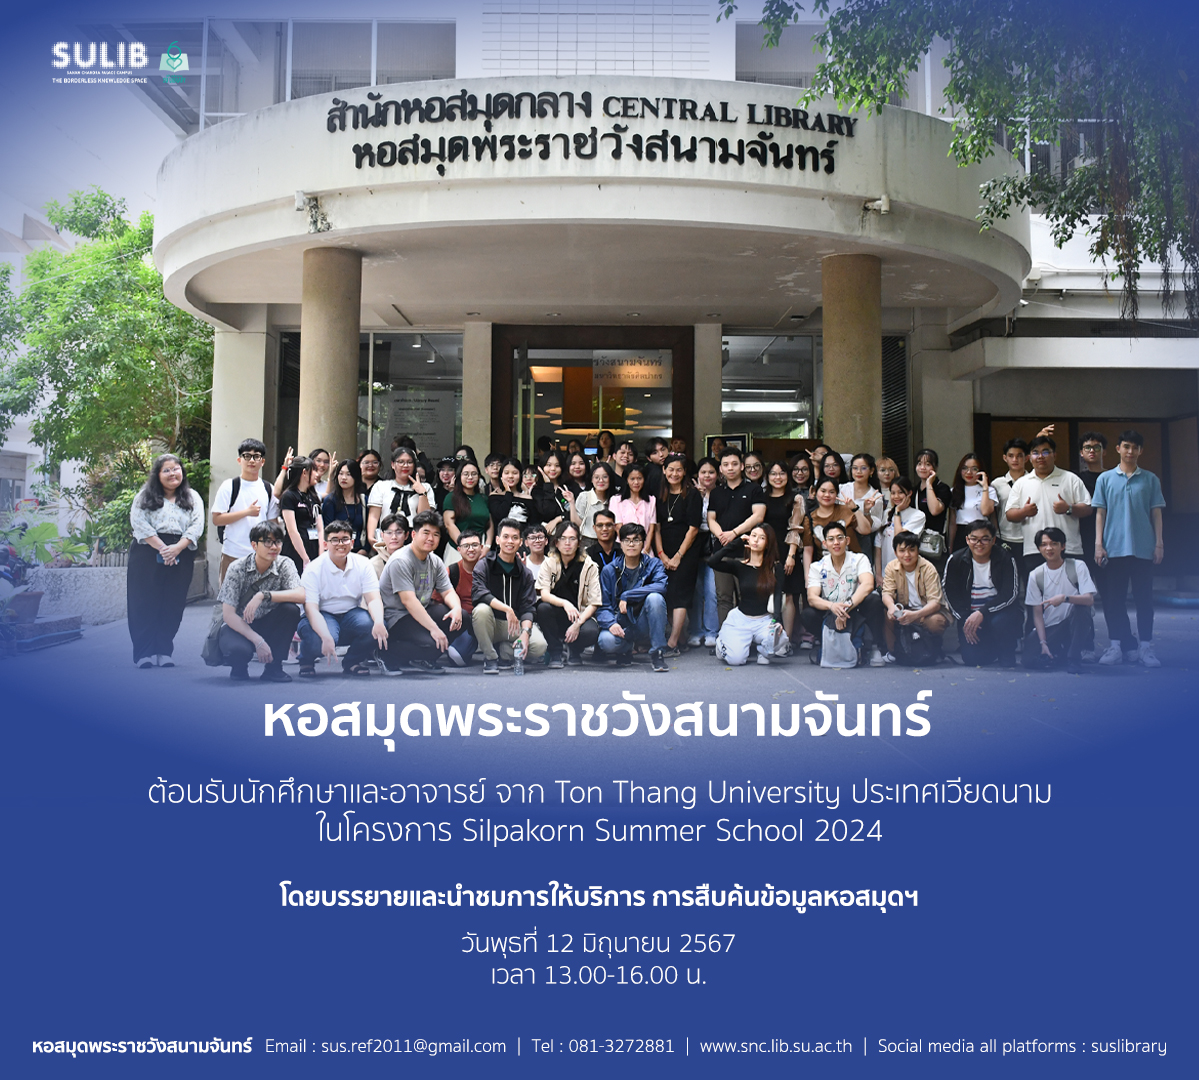 หอสมุดพระราชวังสนามจันทร์ ต้อนรับนักศึกษาและอาจารย์ จาก Ton Thang University ประเทศเวียดนาม ในโครงการ Silpakorn Summer School 2024